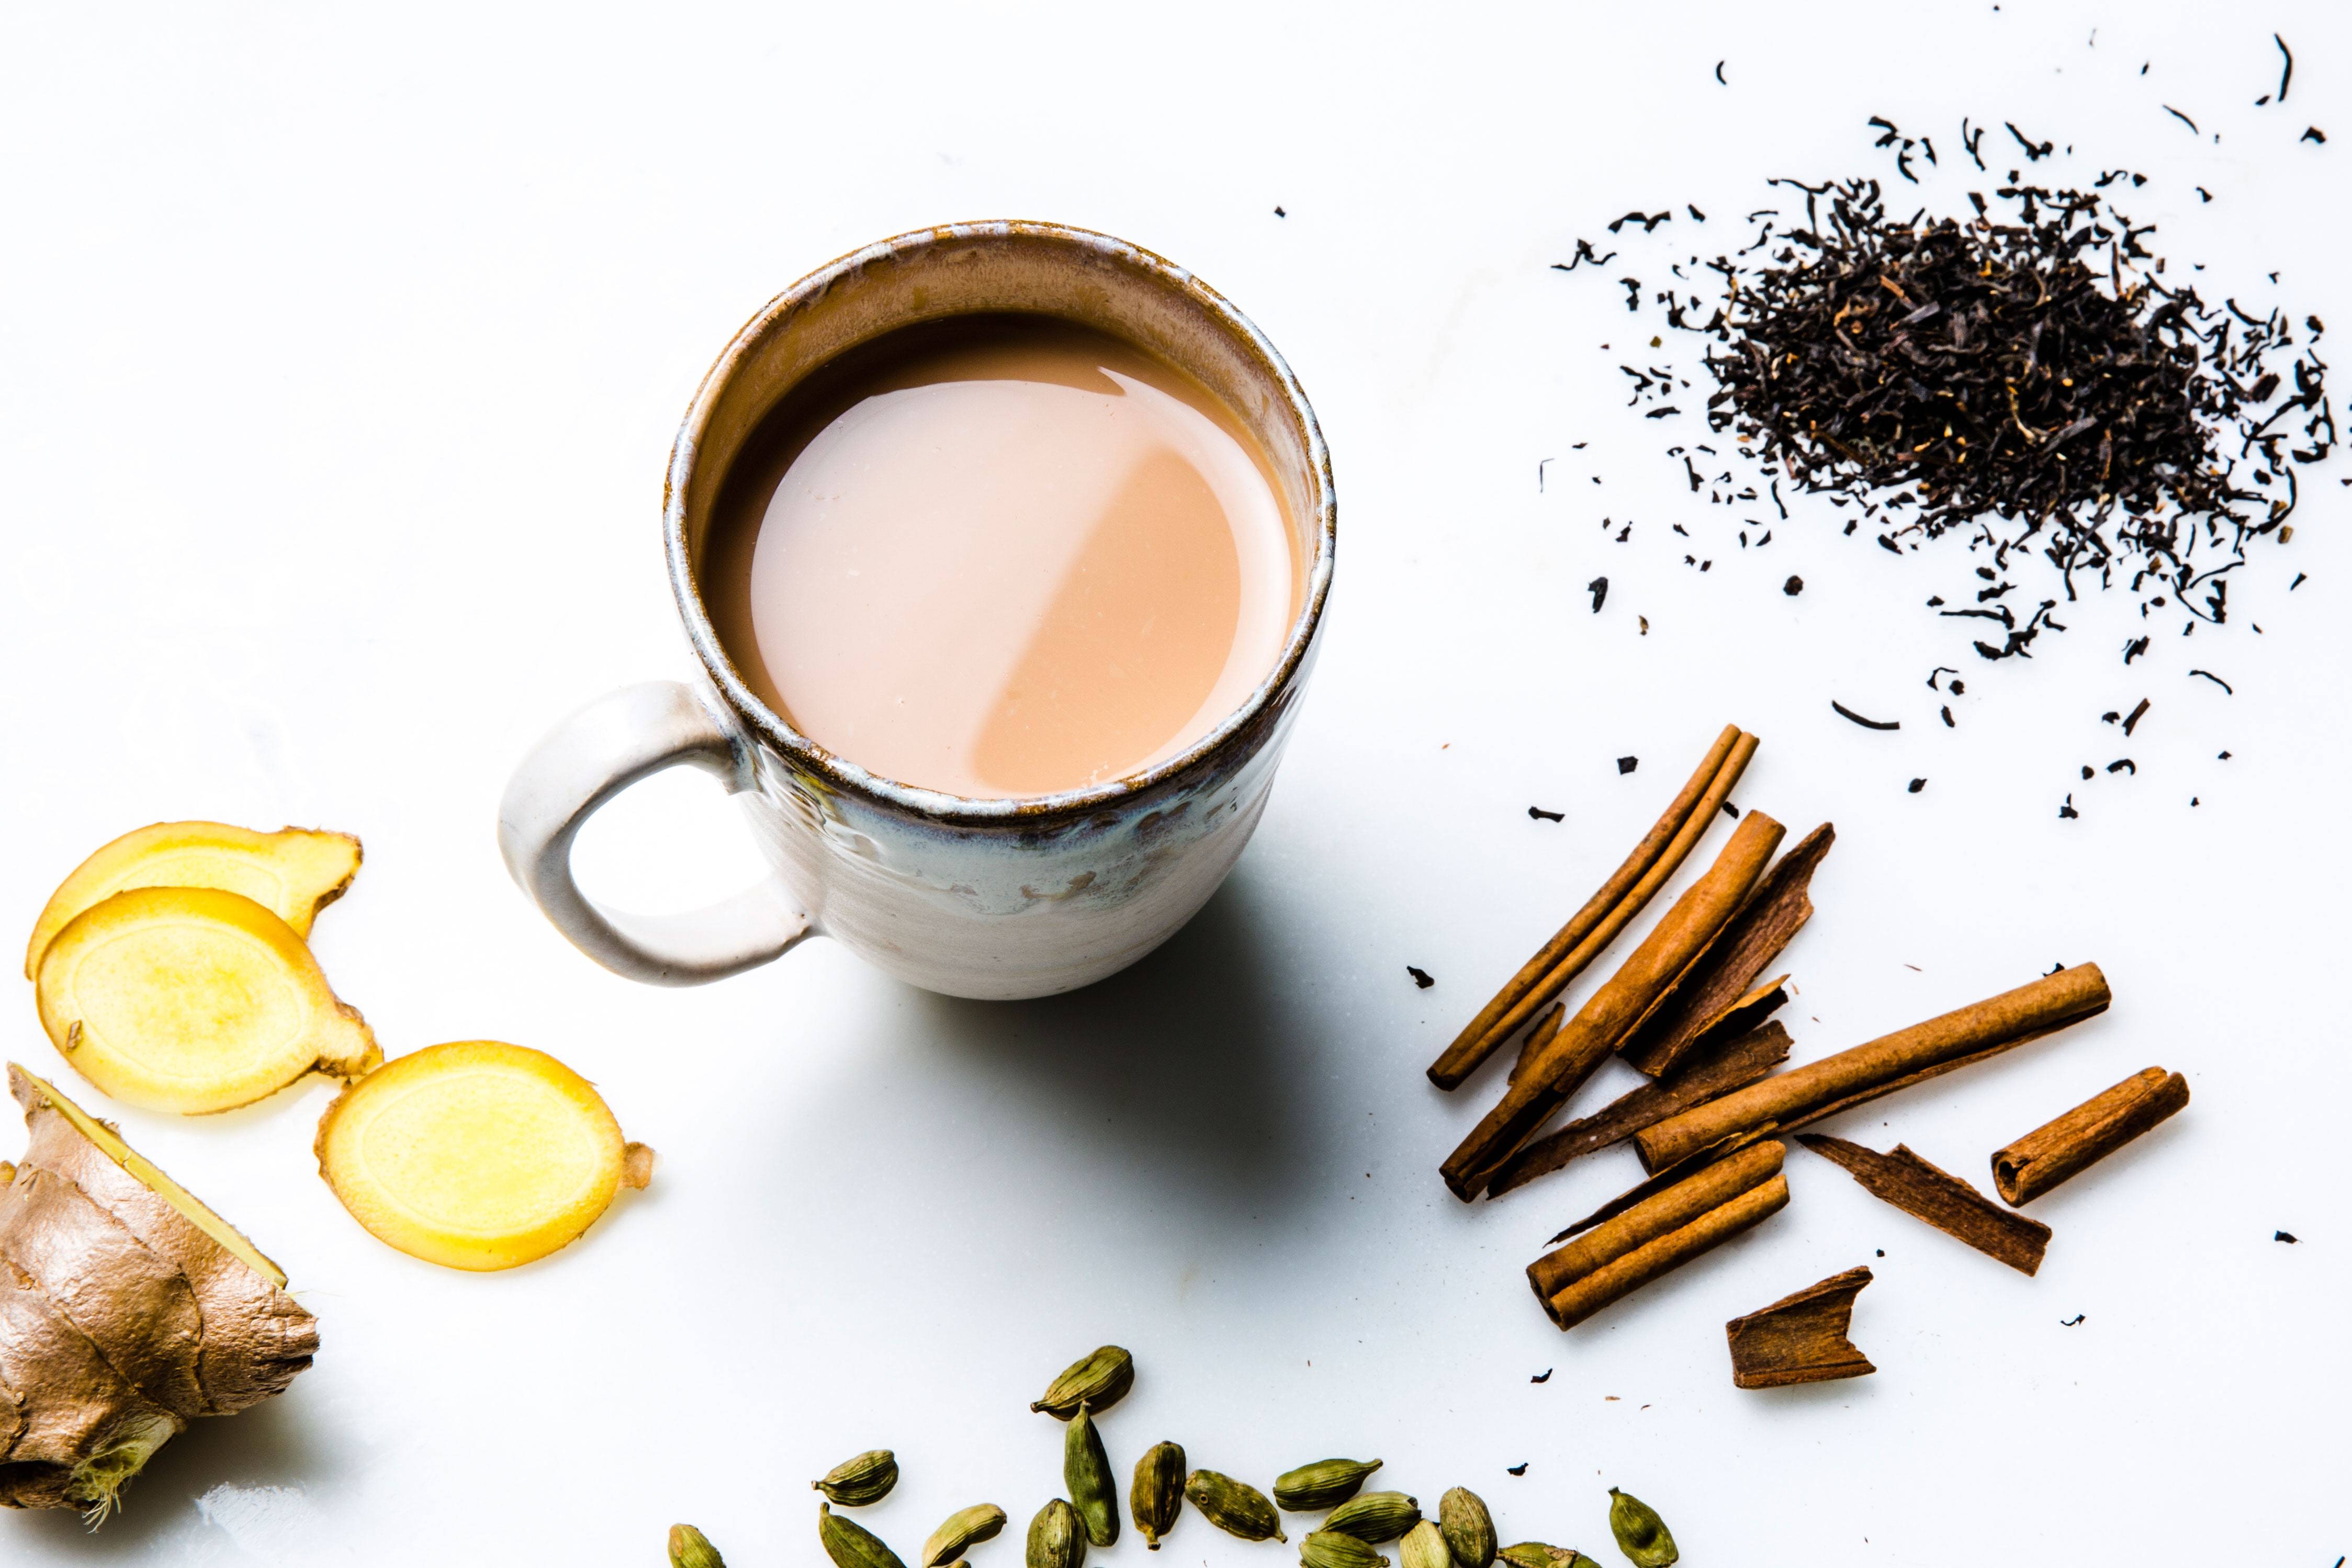 印度香料奶茶(masala chai)是茶也是药